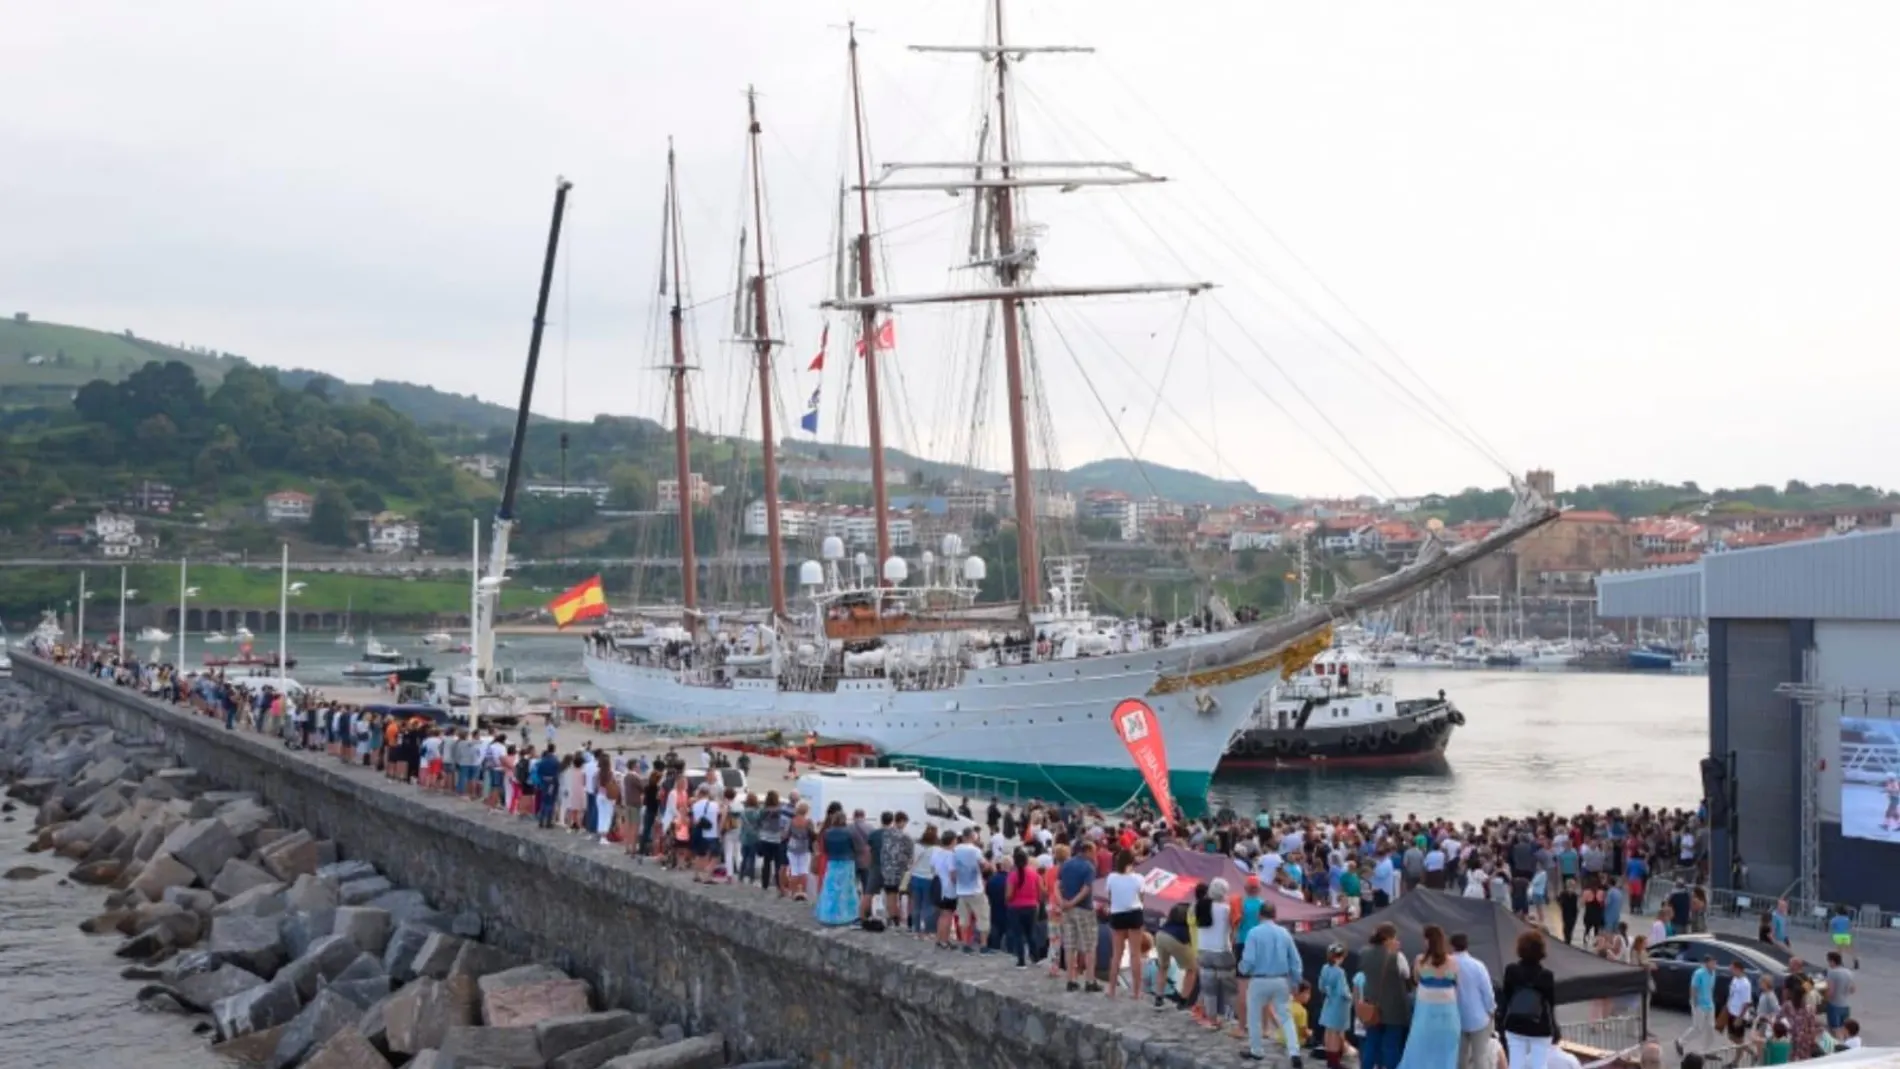 El buque Juan Sebastián Elcano llegando al puerto de Getaria. (Foto: Laura Llamas)